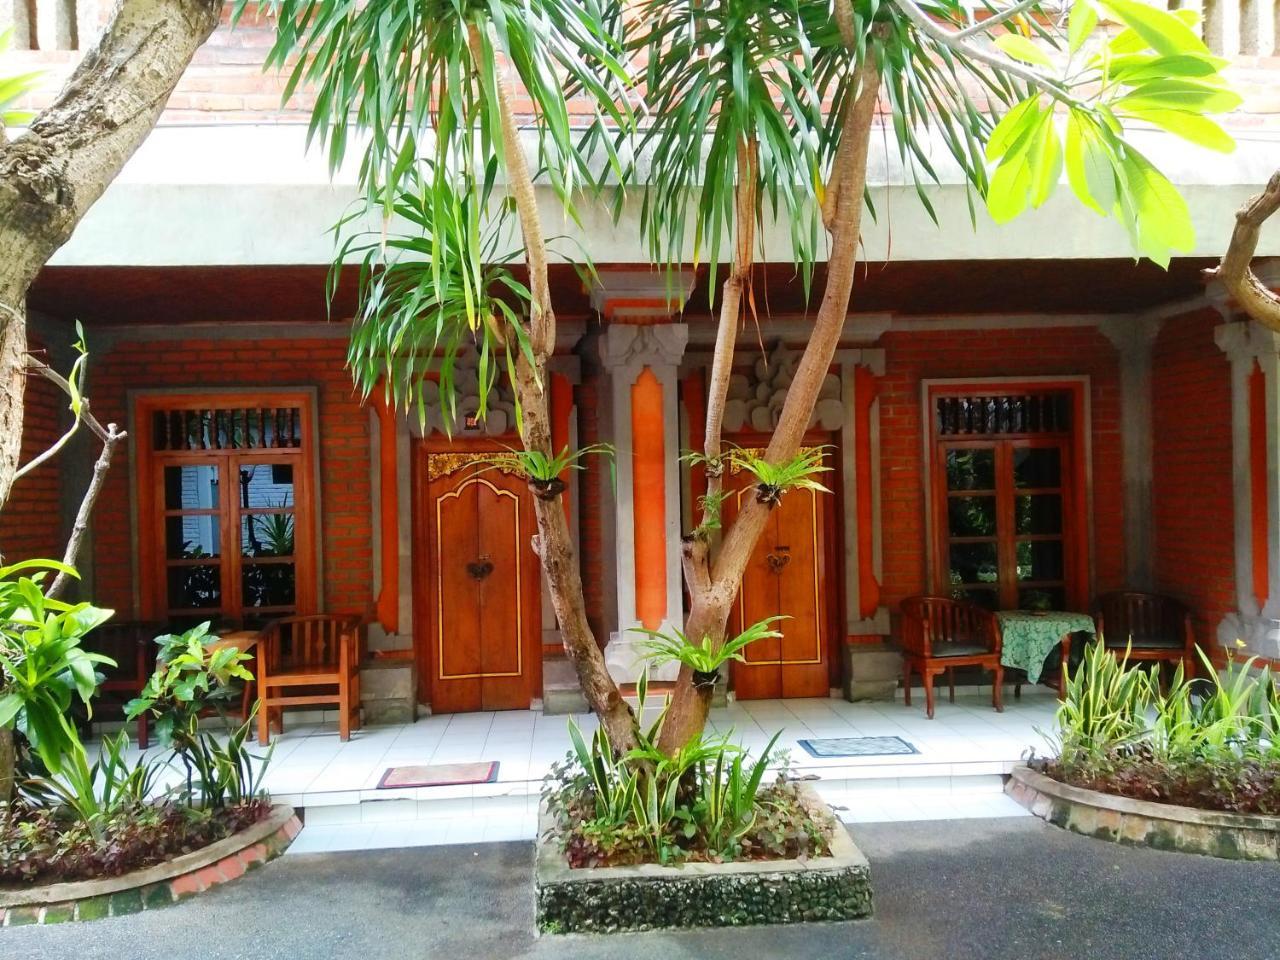 Sayang Maha Mertha Hotel Pecatu  Bagian luar foto